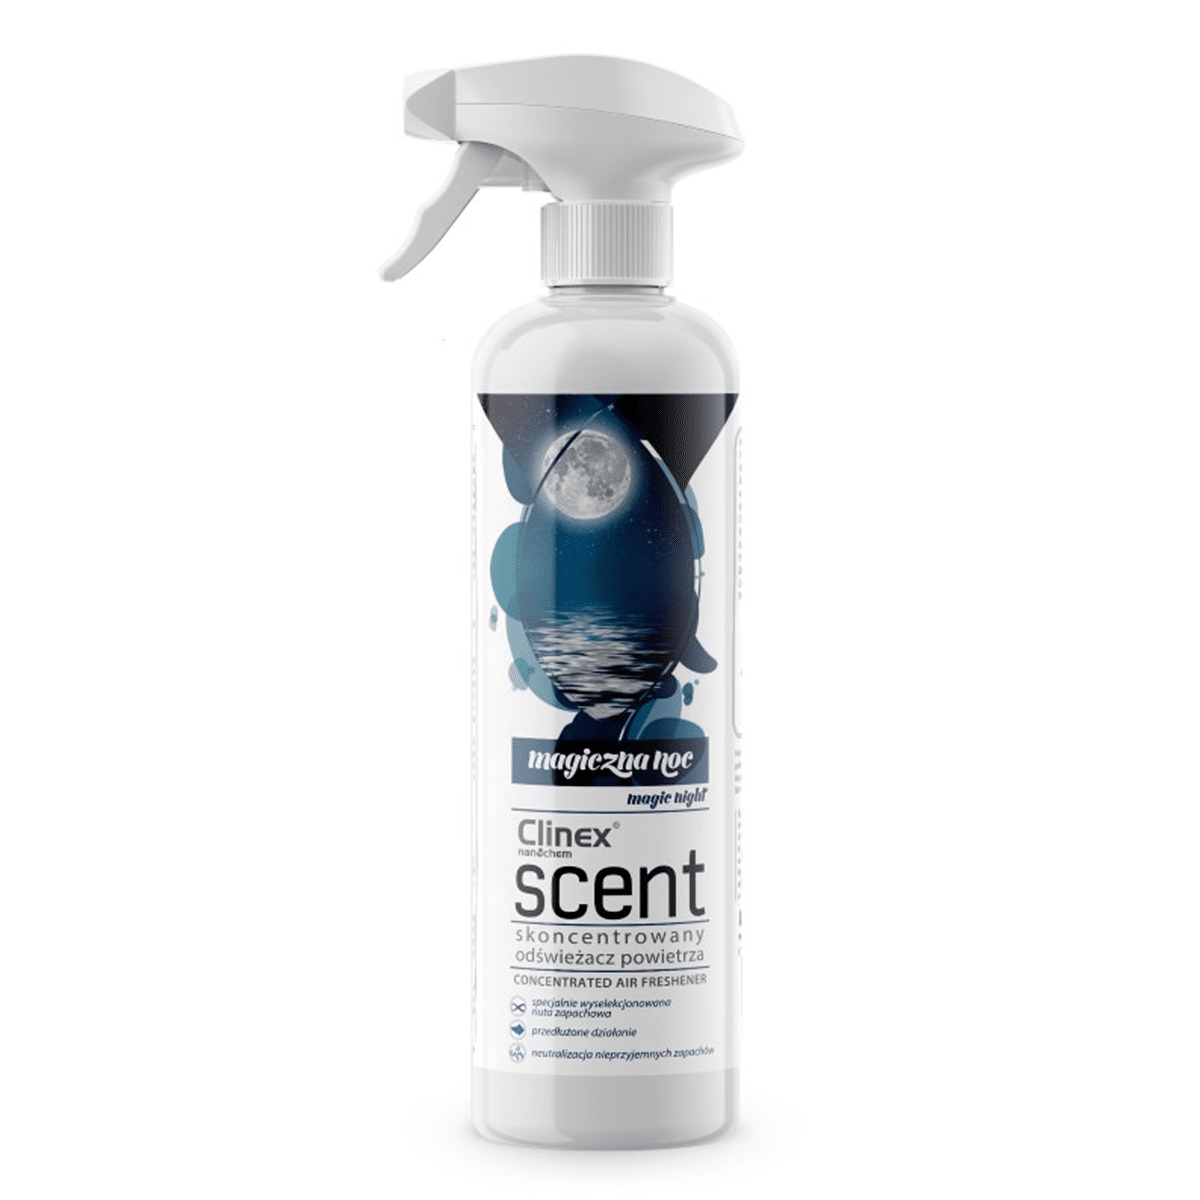 CLINEX Scent Magiczna Noc 500ml Skoncentrowany Odświeżacz Powietrza o Unikalnej Nucie Zapachowej